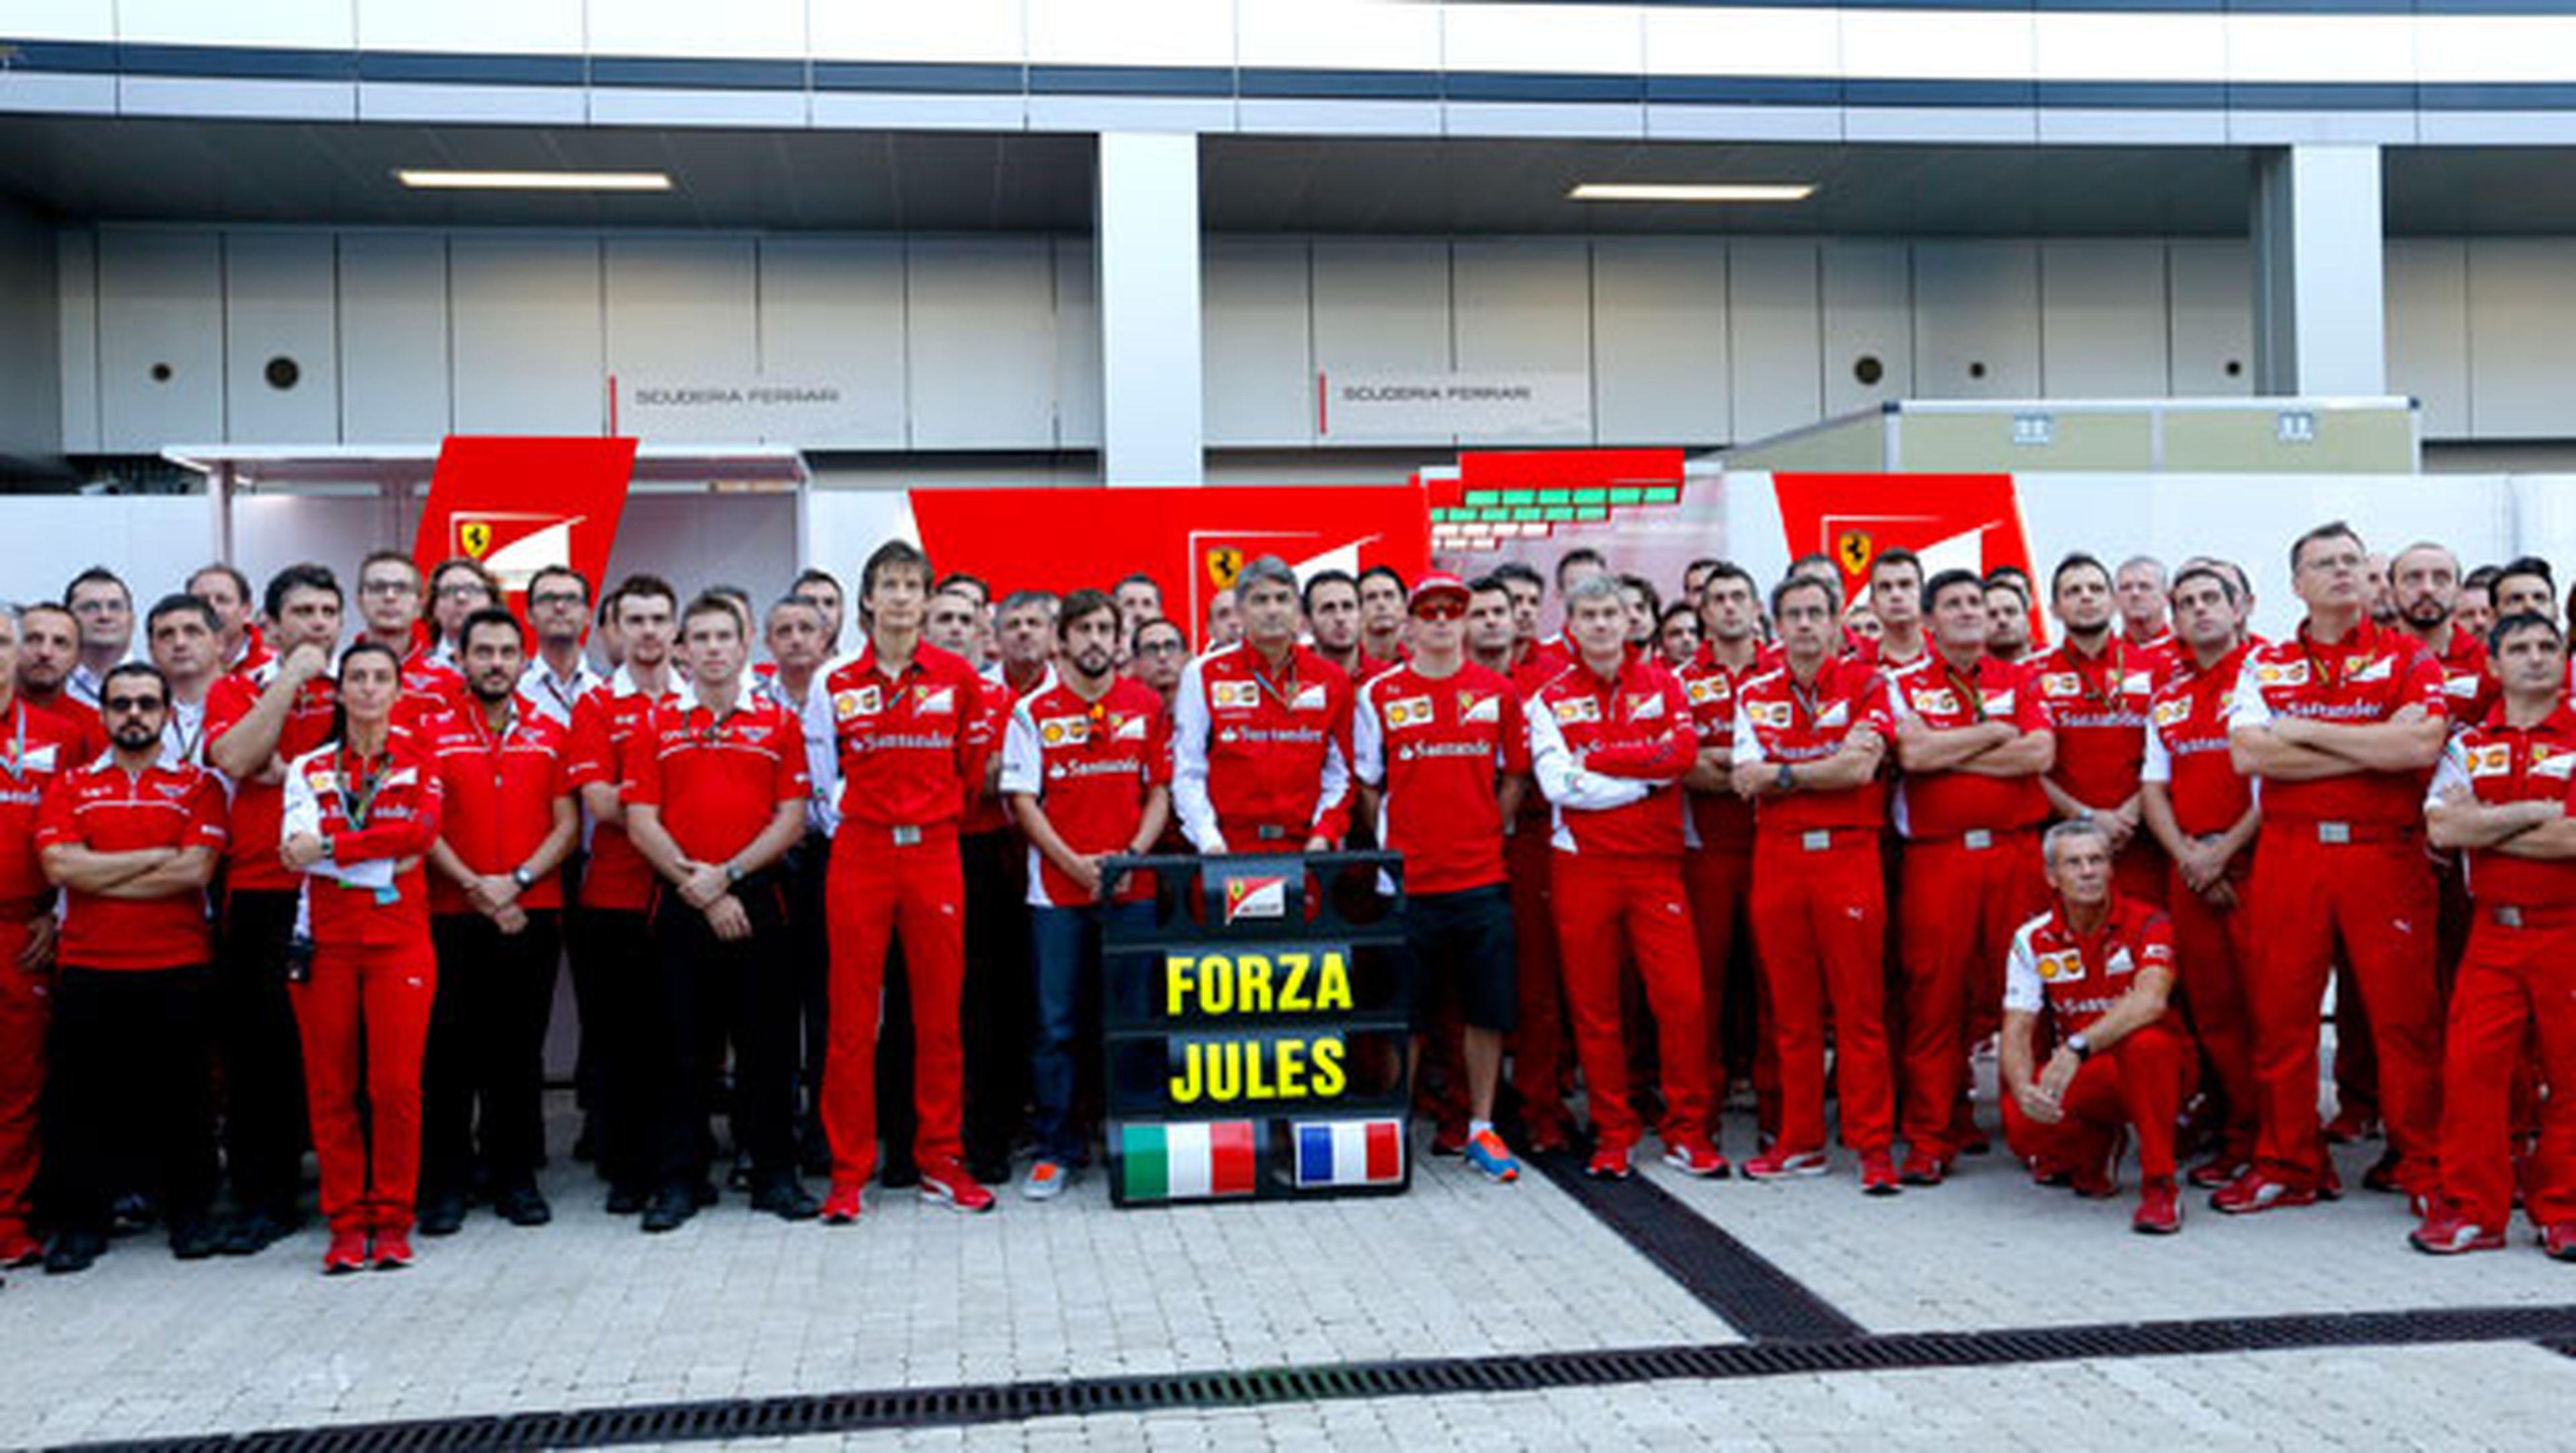 Los pilotos de F1 envían "fuerza" a Bianchi desde Sochi